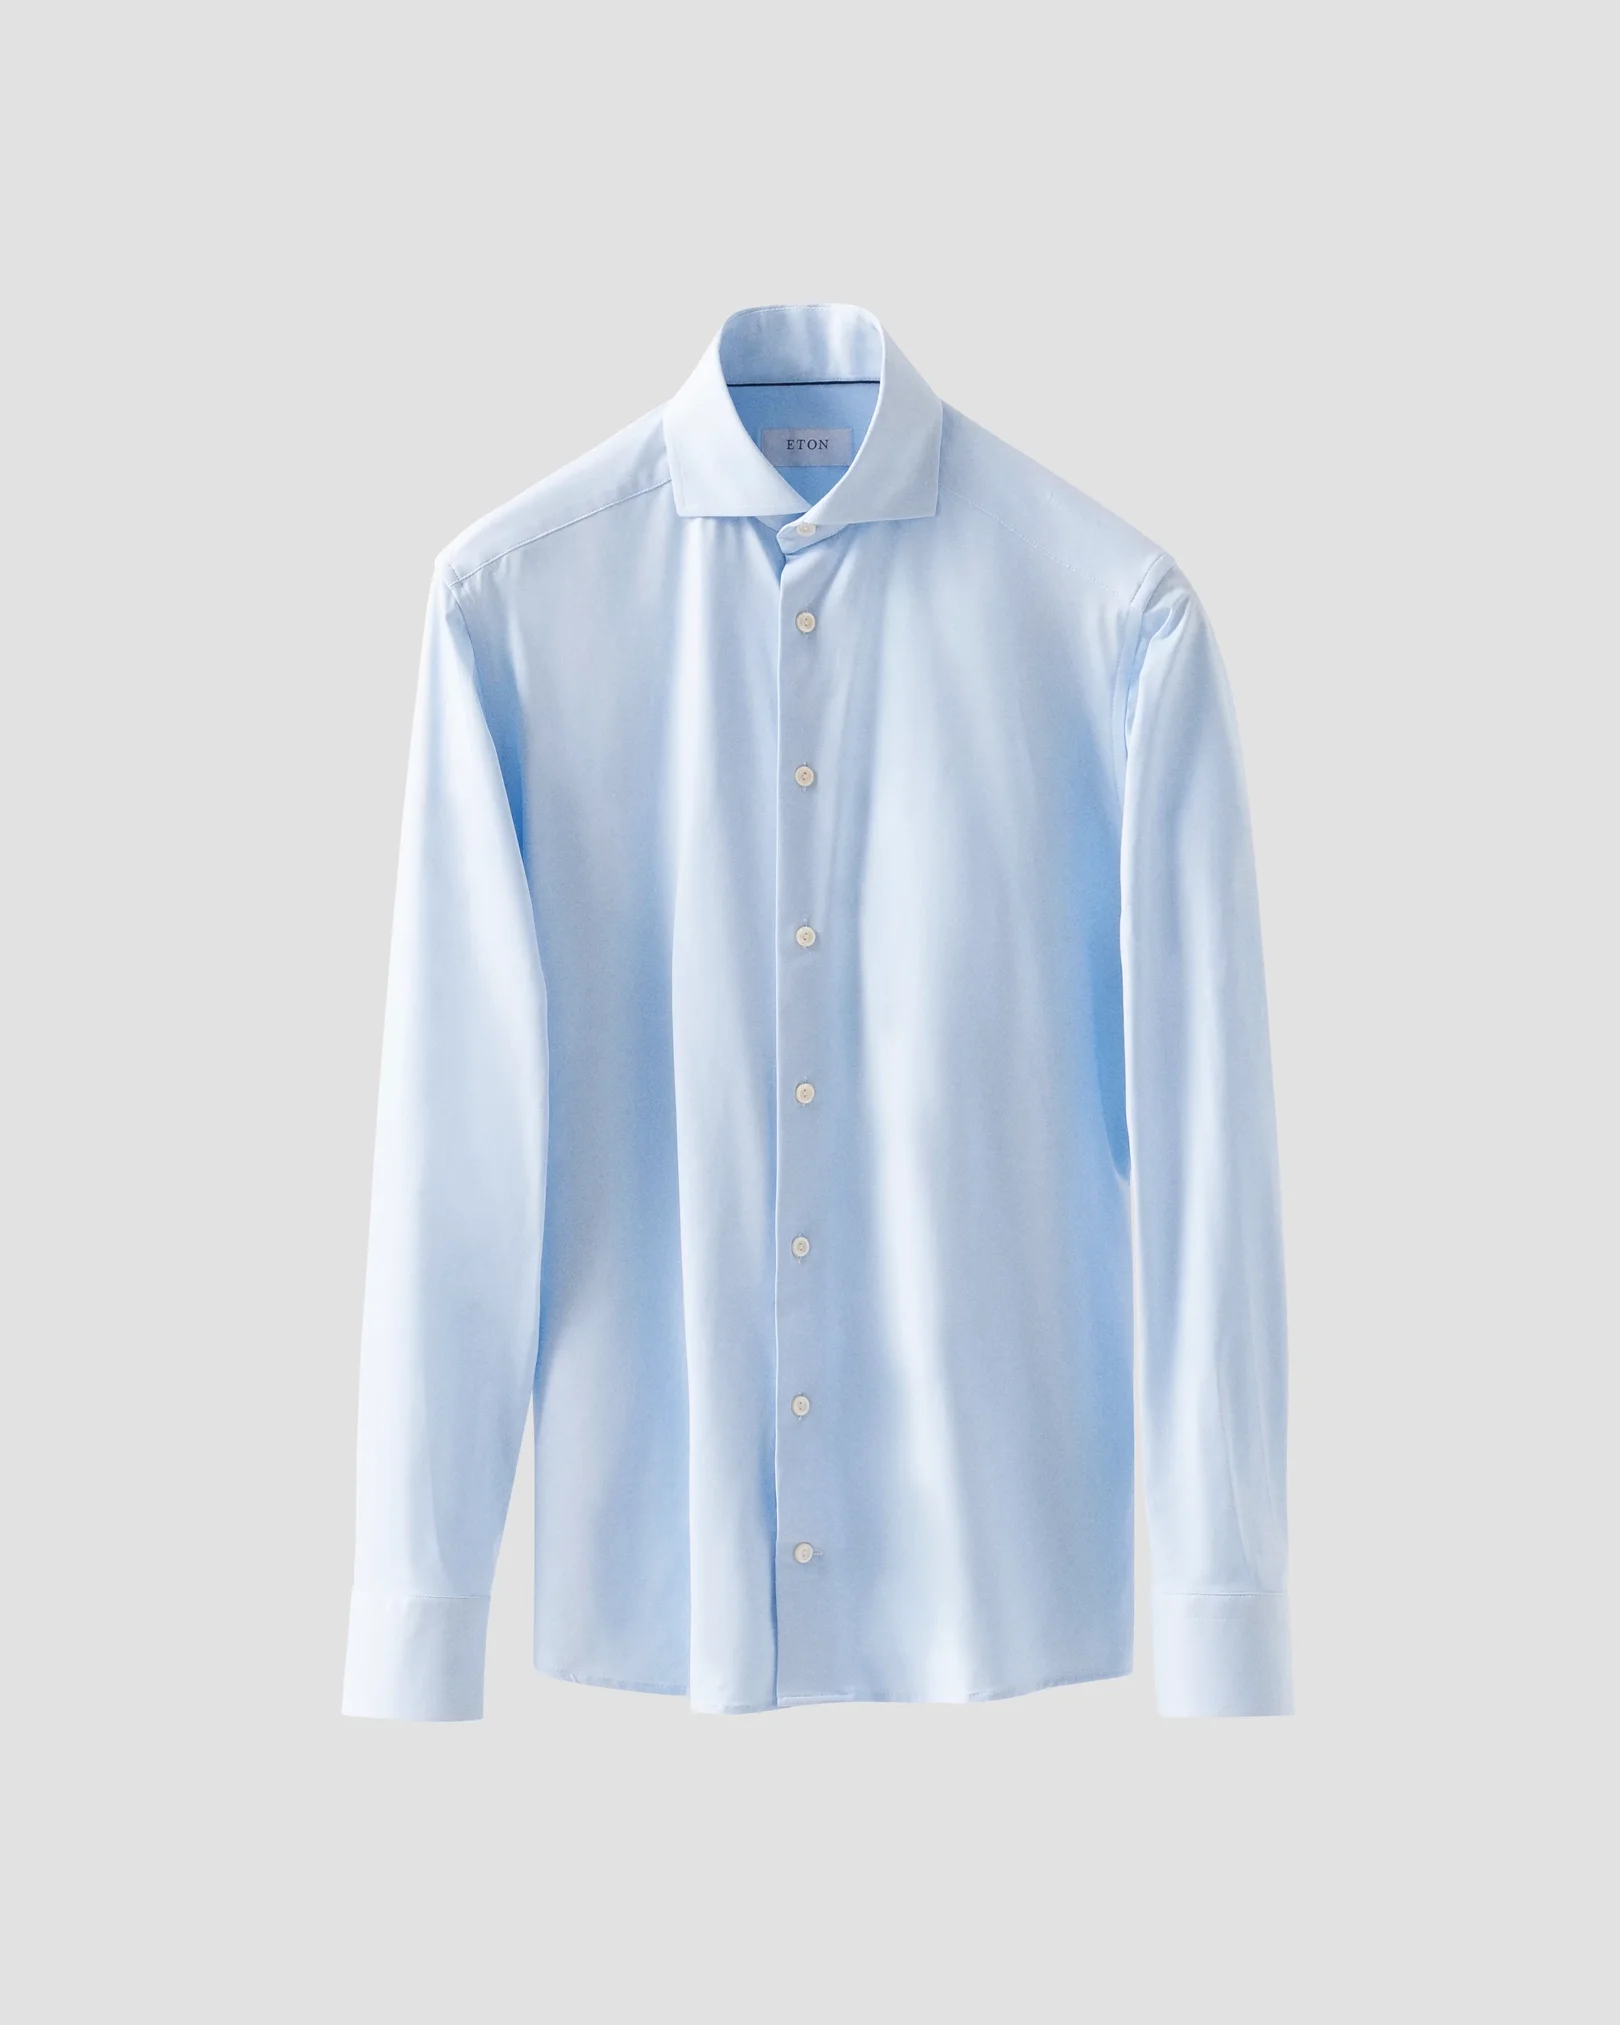 Eton - Light Blue Four-Way Stretch Shirt